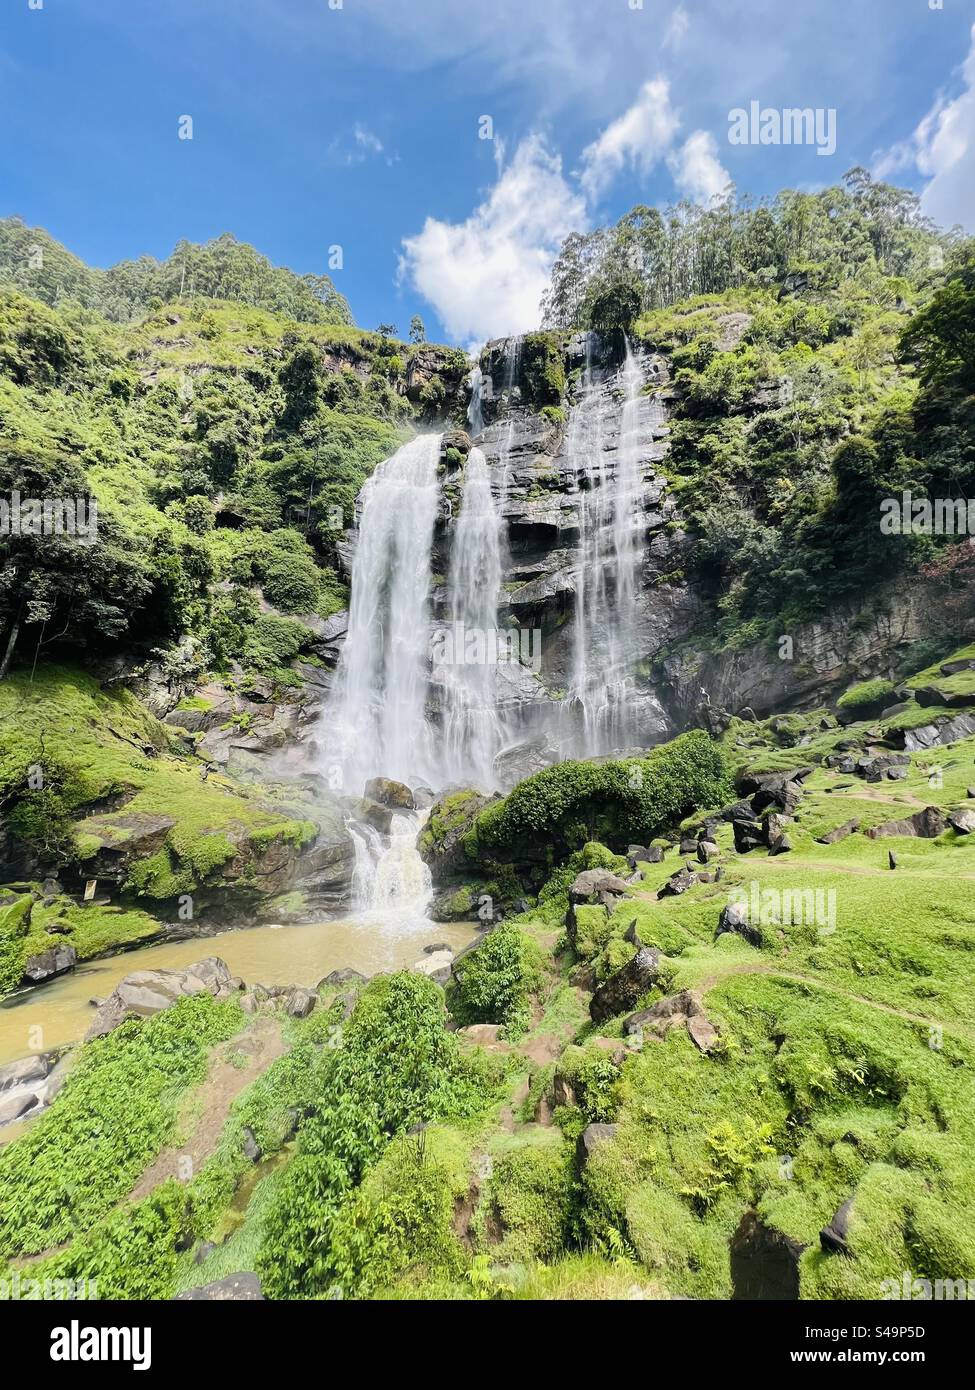 Dies ist ein wunderschöner Wasserfall in Sri Lanka Stockfoto